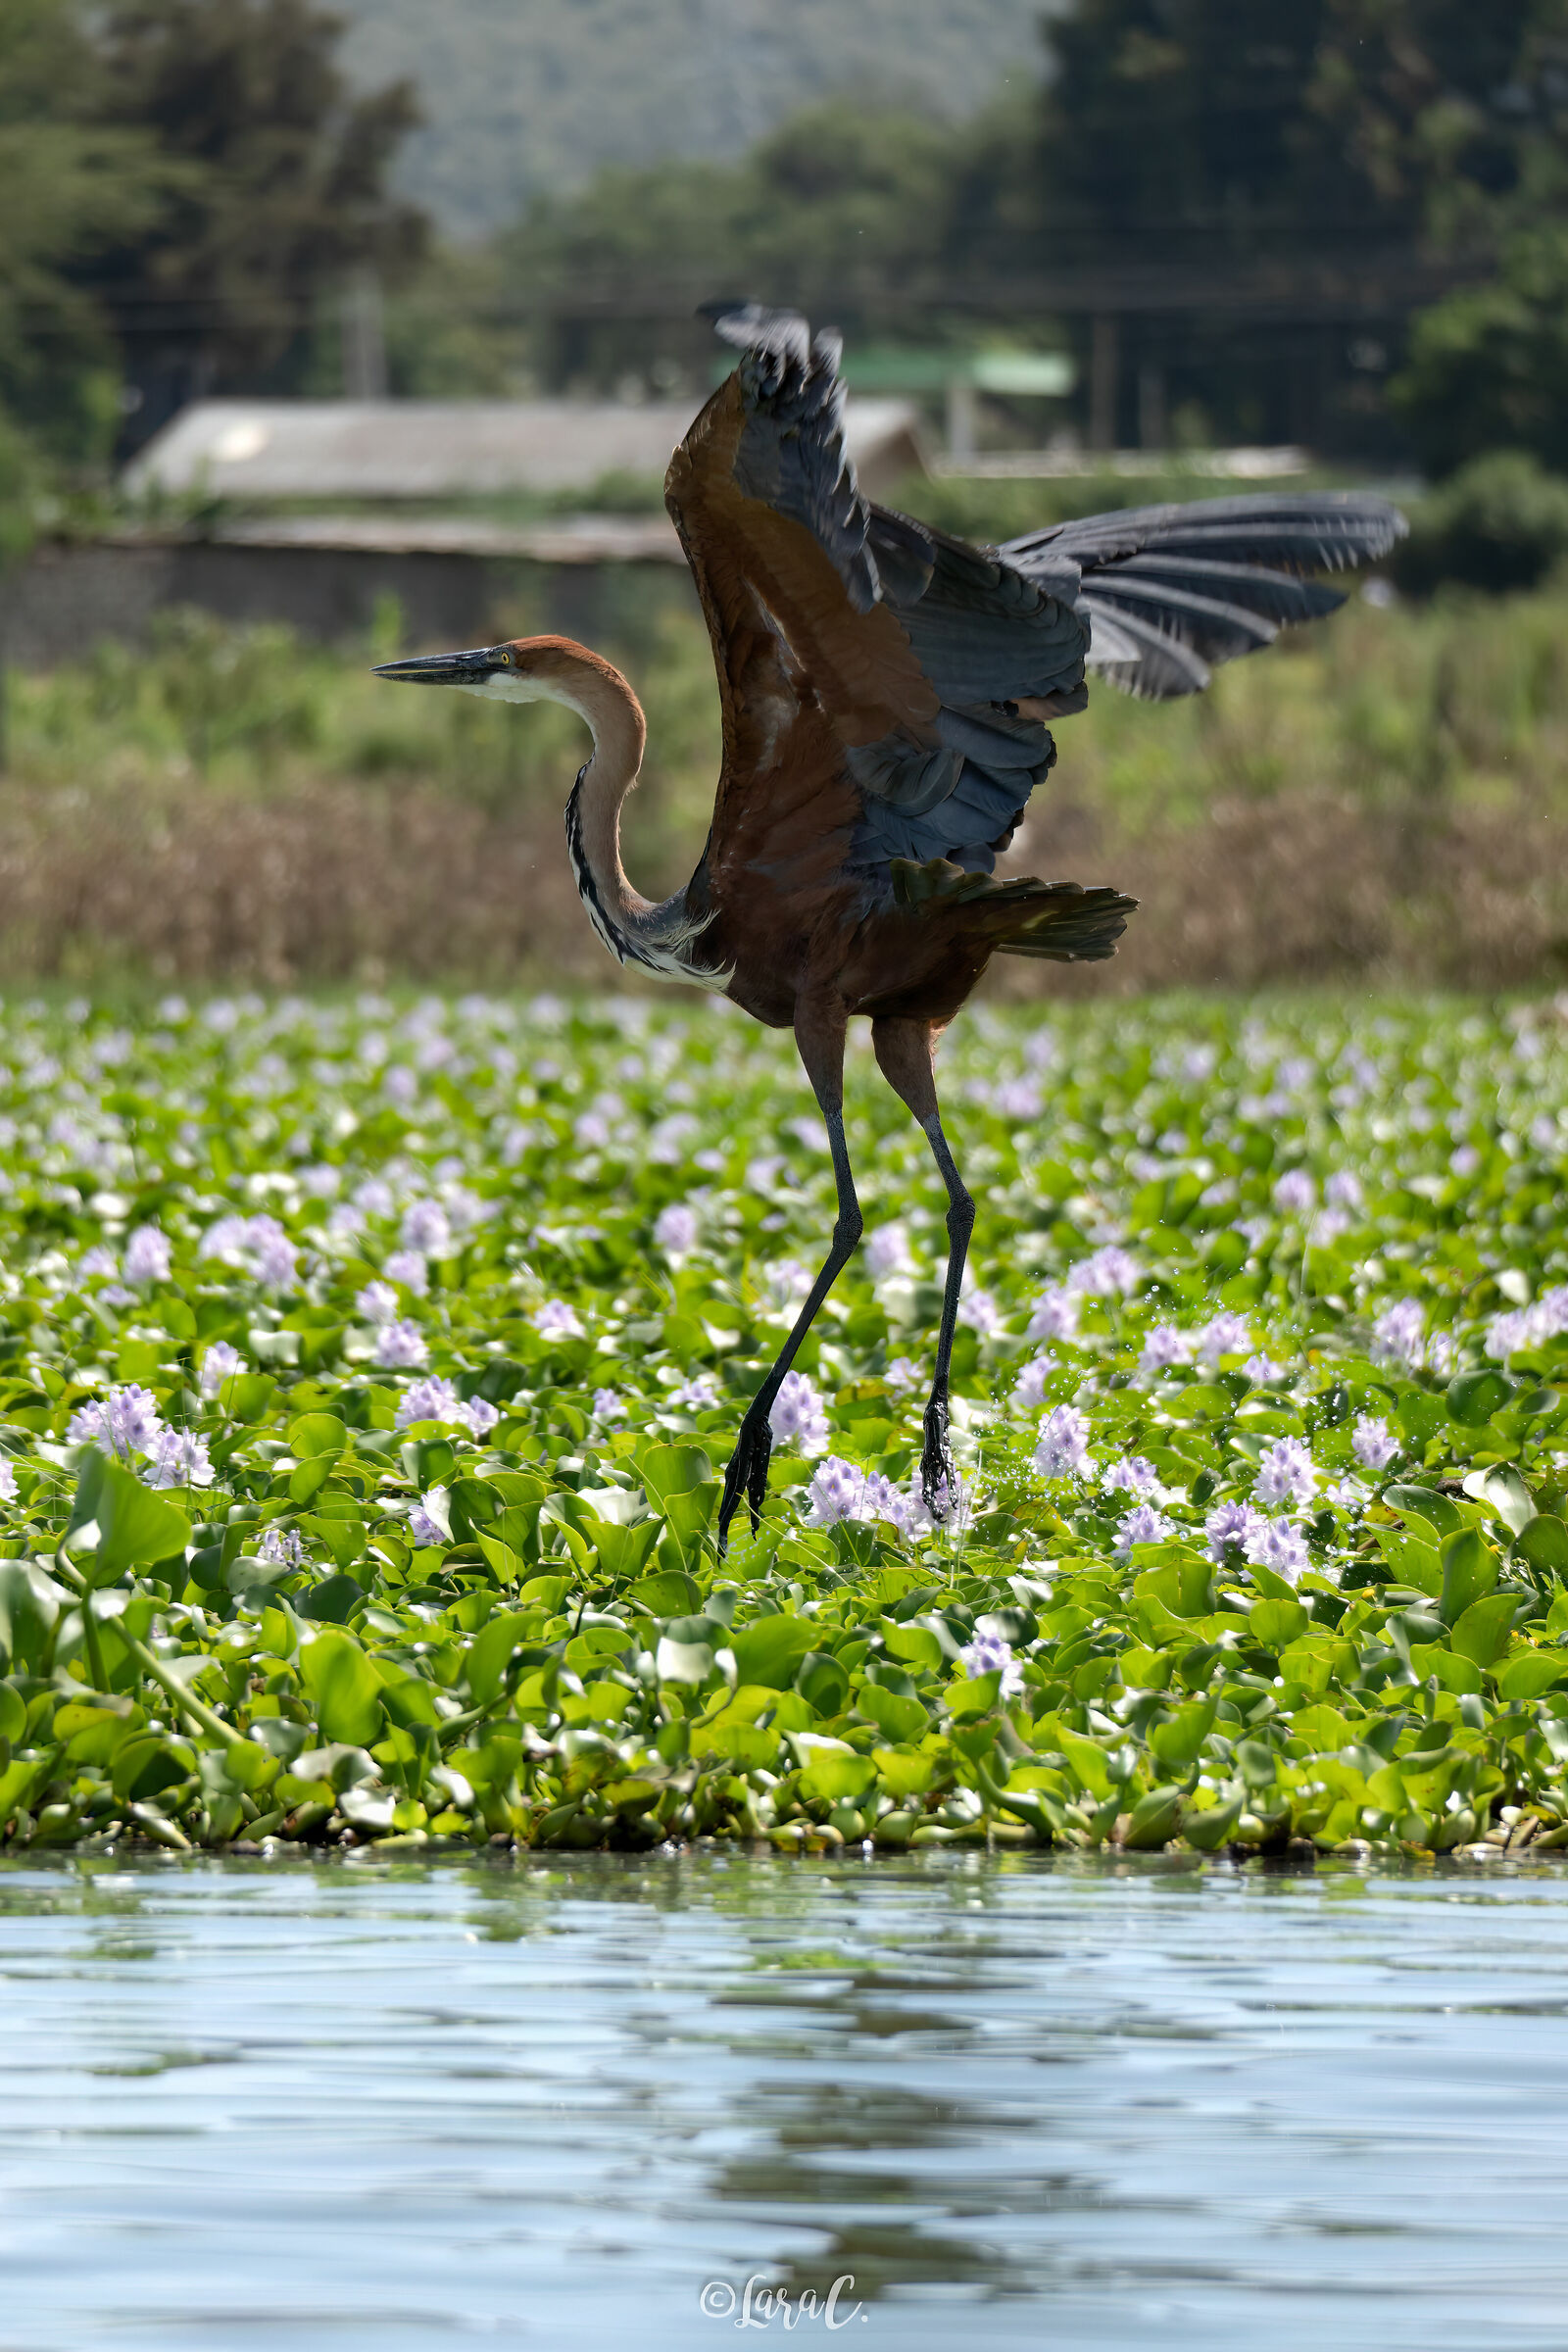 Giant heron in flight...